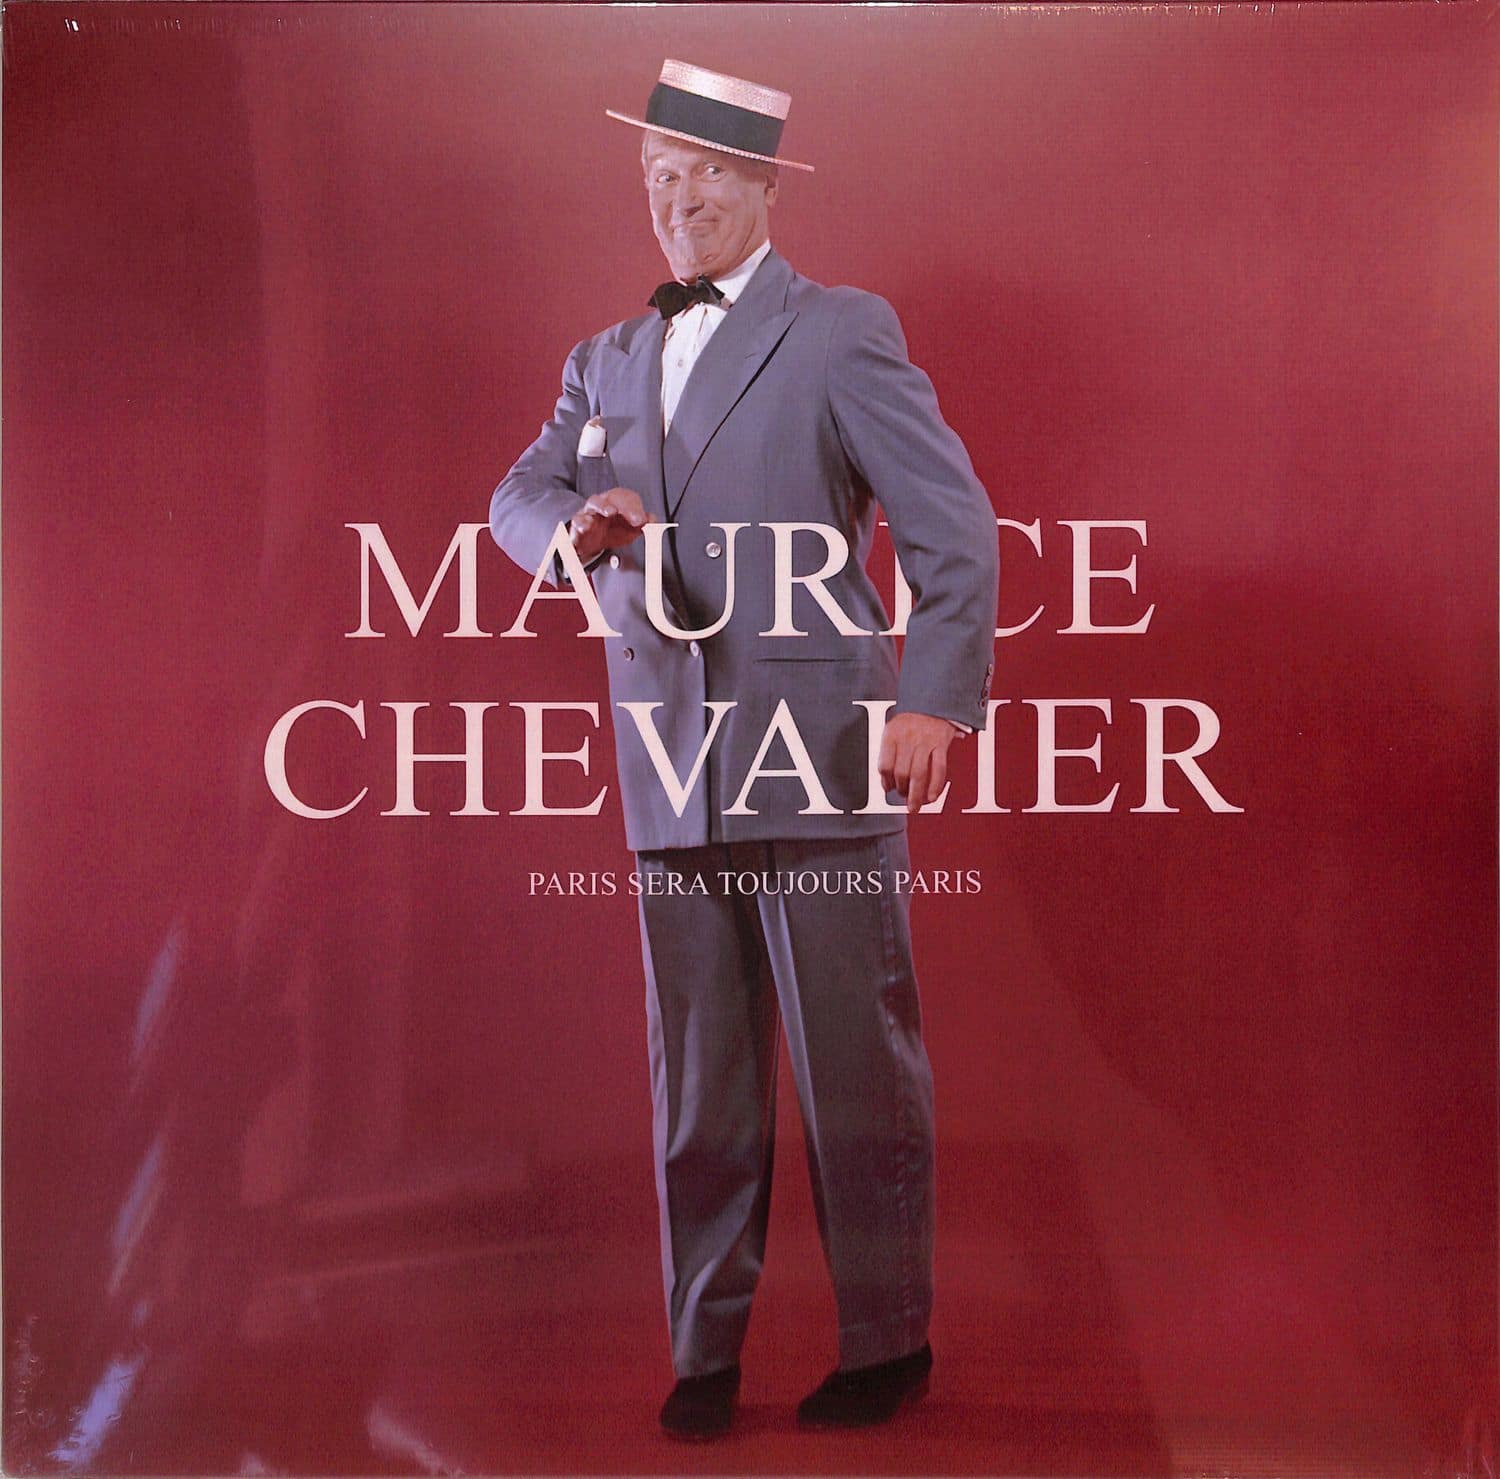 Maurice Chevalier - PARIS SERA TOUJOURS PARIS 